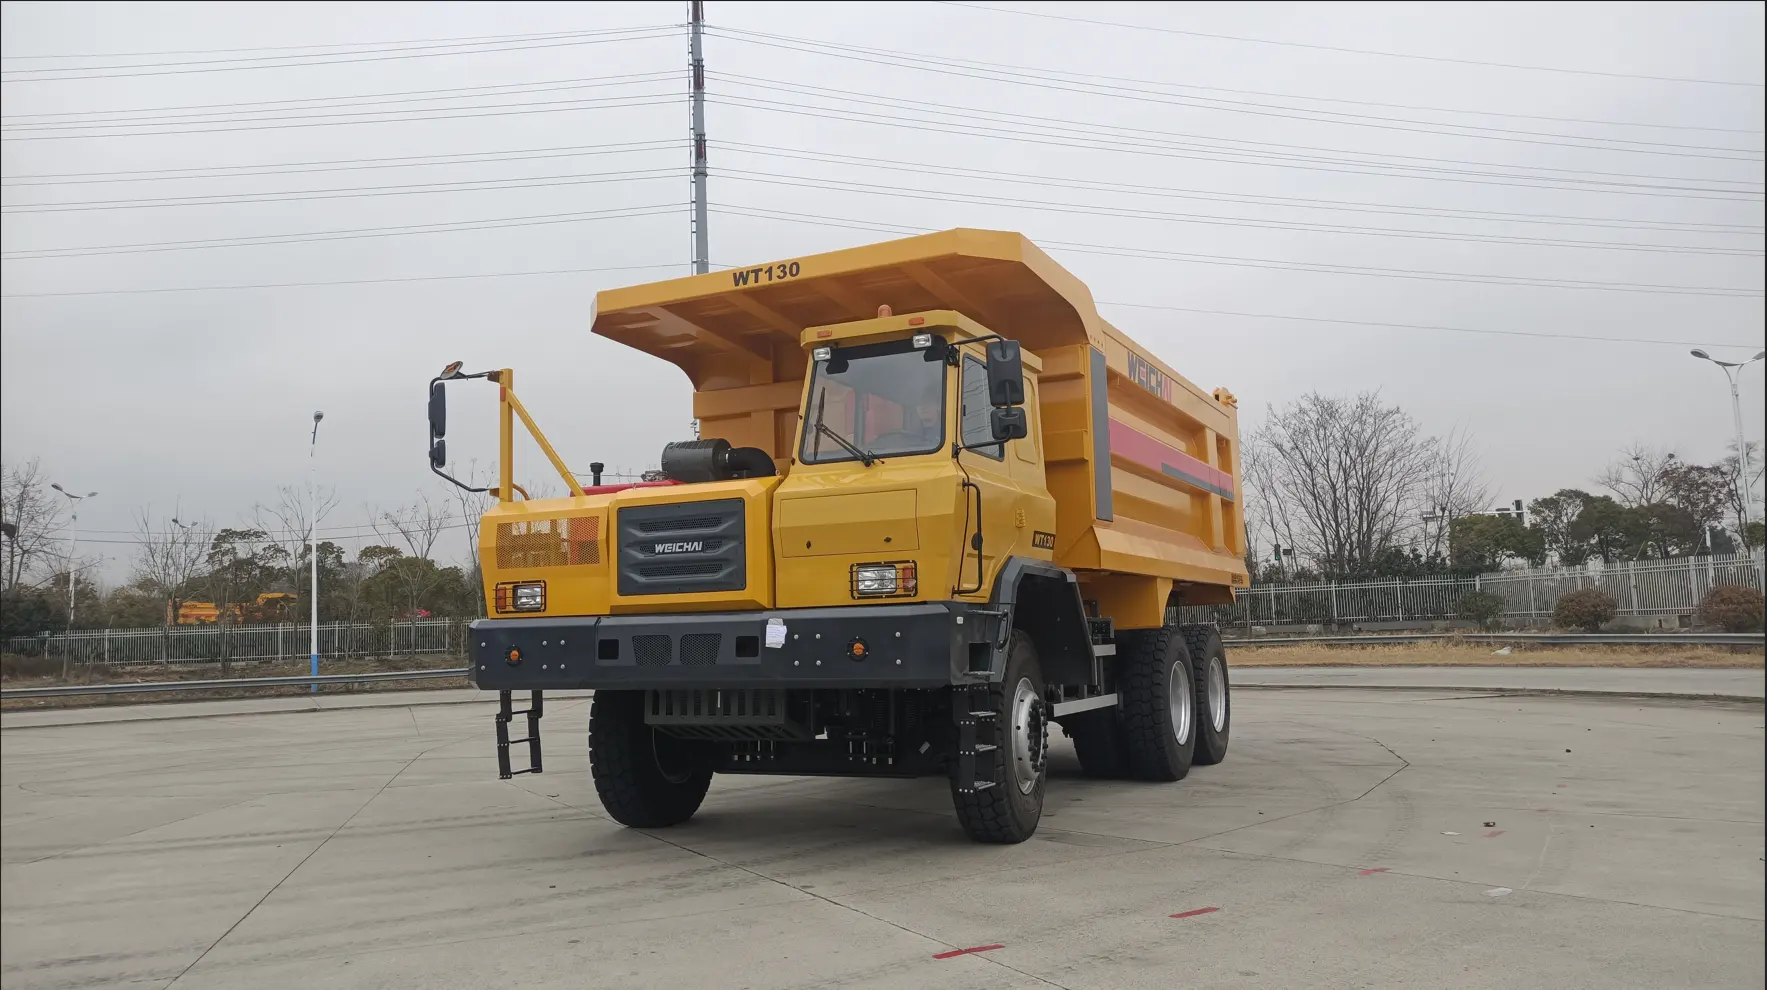 Construction de HanPei de haute qualité, fiable et durable LT130 camions miniers 130ton en vente bon marché